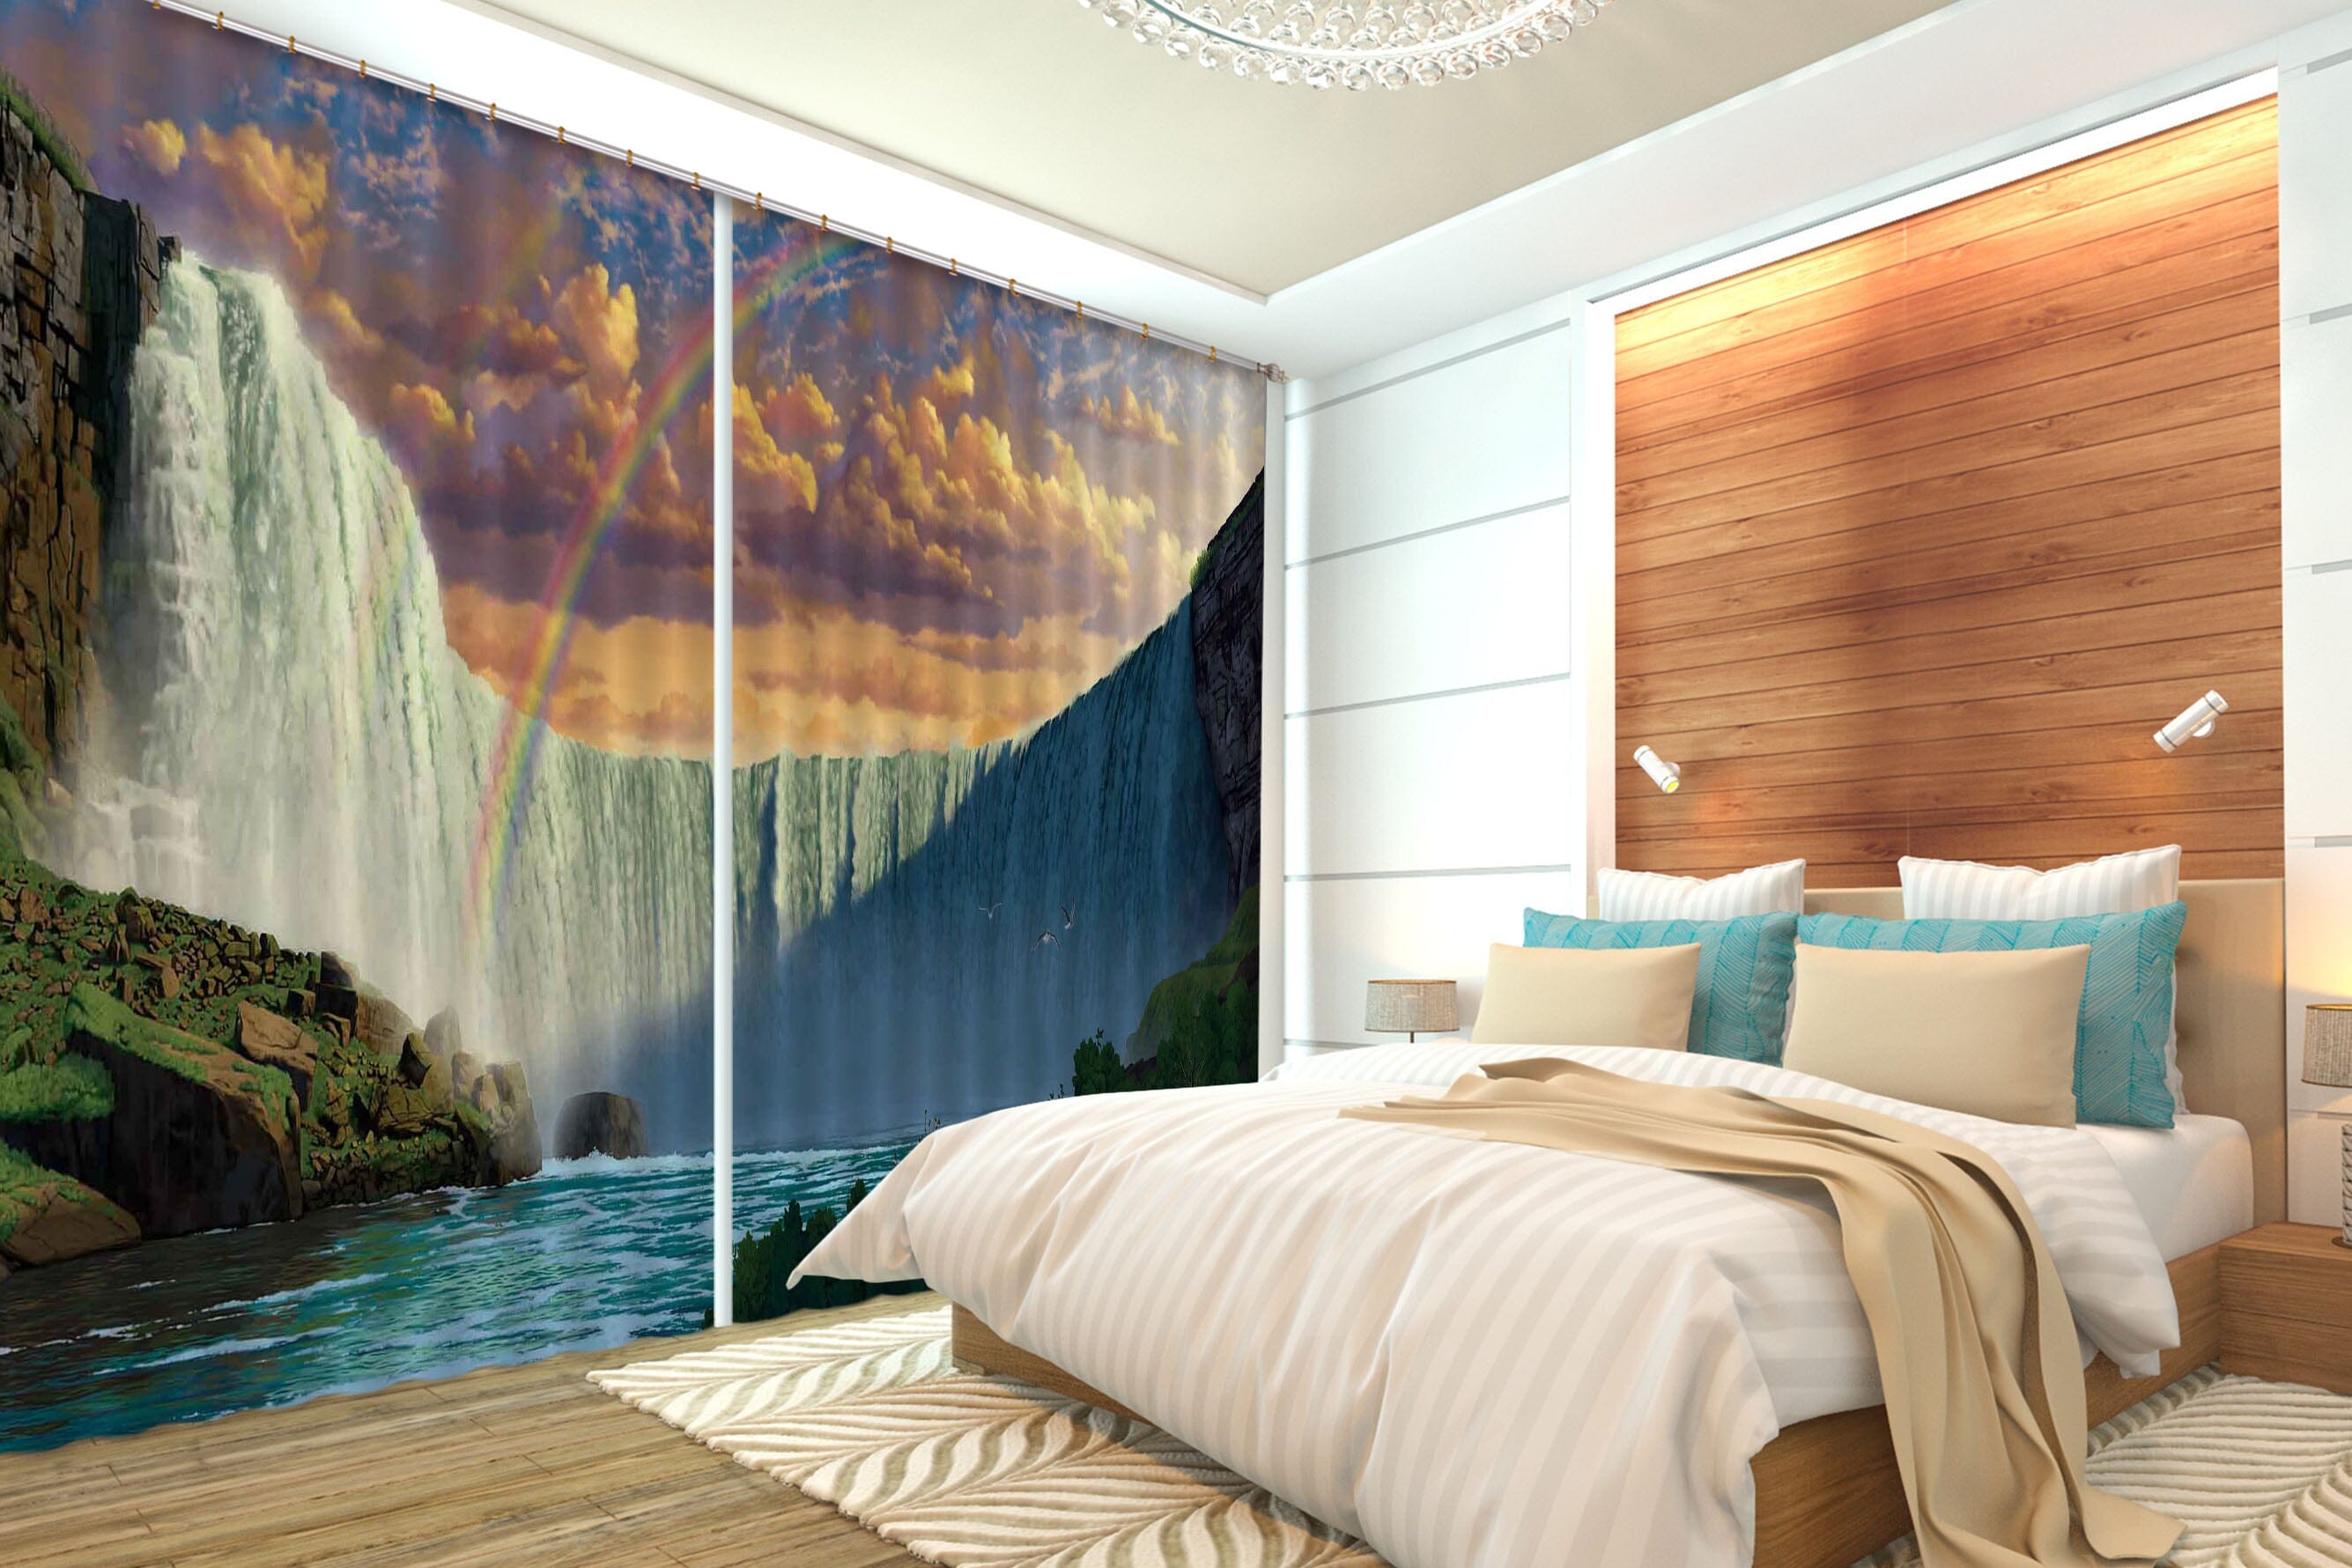 3D Niagara Falls 055 Vincent Hie Curtain Curtains Drapes Curtains AJ Creativity Home 